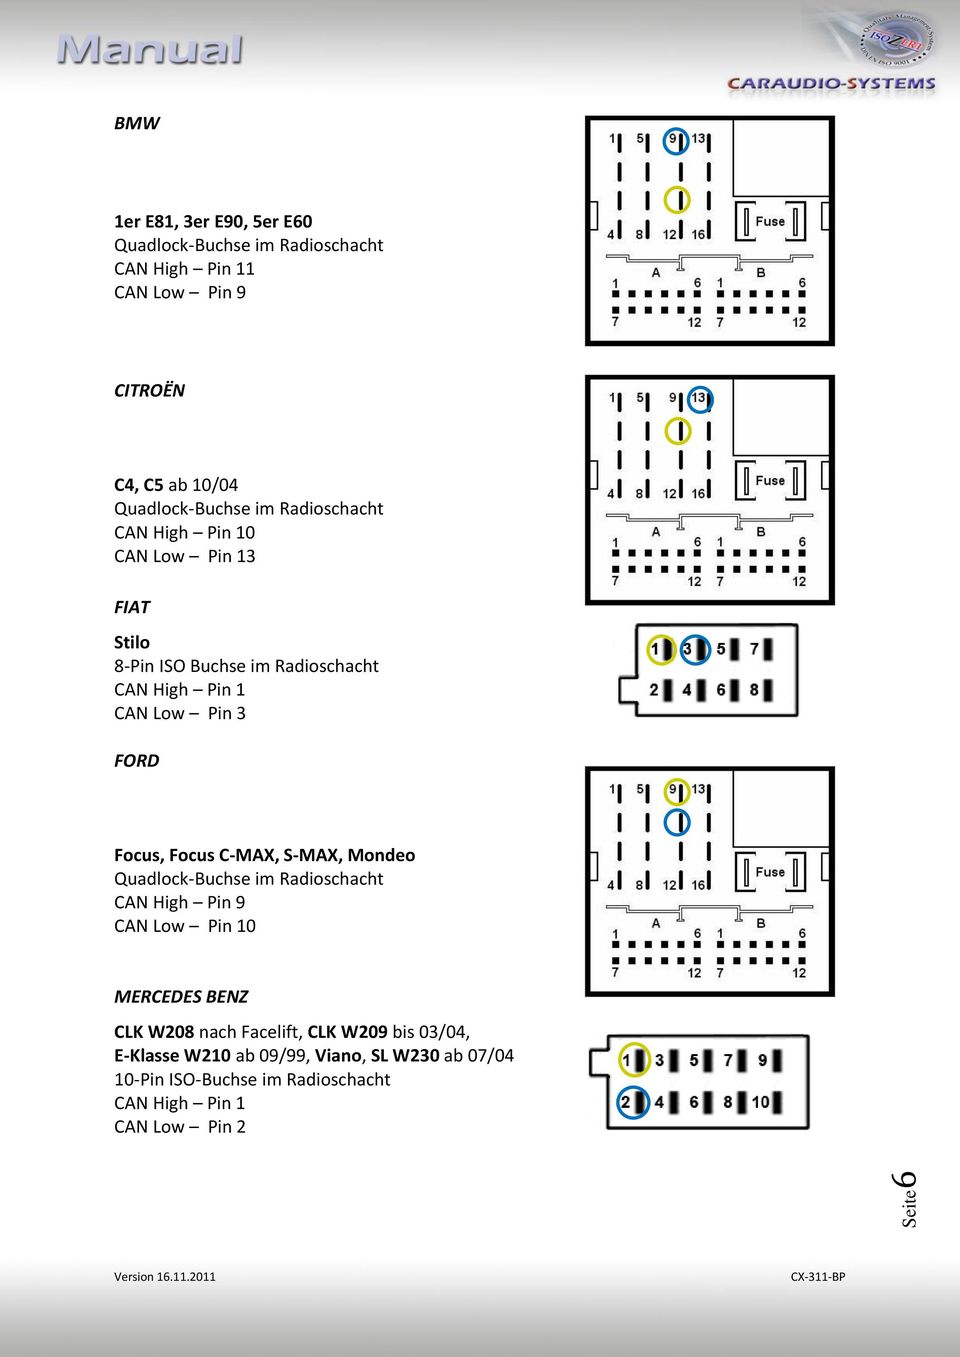 Focus C-MAX, S-MAX, Mondeo CAN High Pin 9 MERCEDES BENZ CLK W208 nach Facelift, CLK W209 bis 03/04,